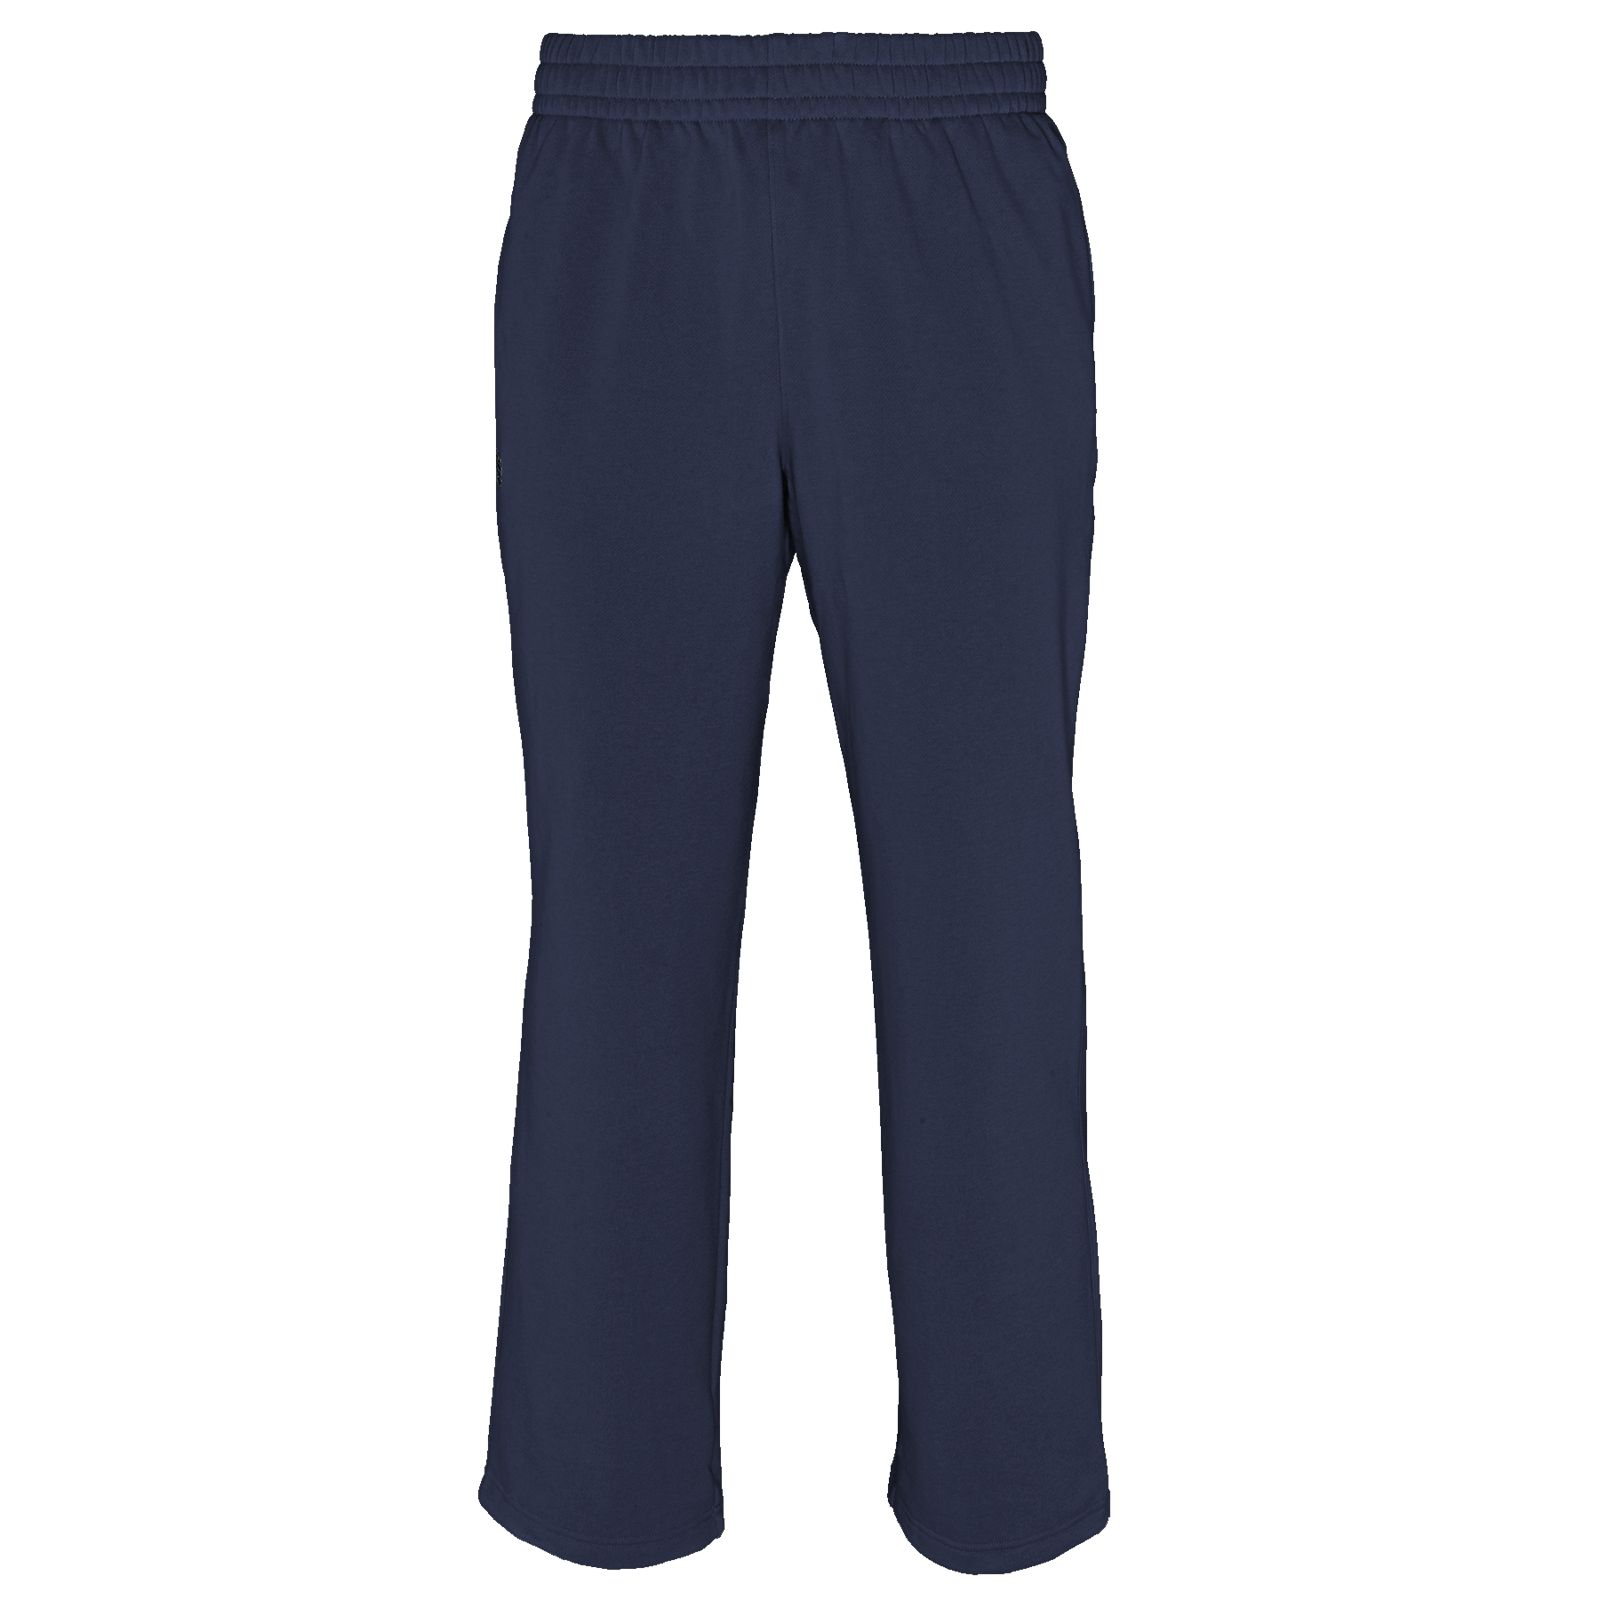 Custom Perf Sweatpants, Team Navy image number 2